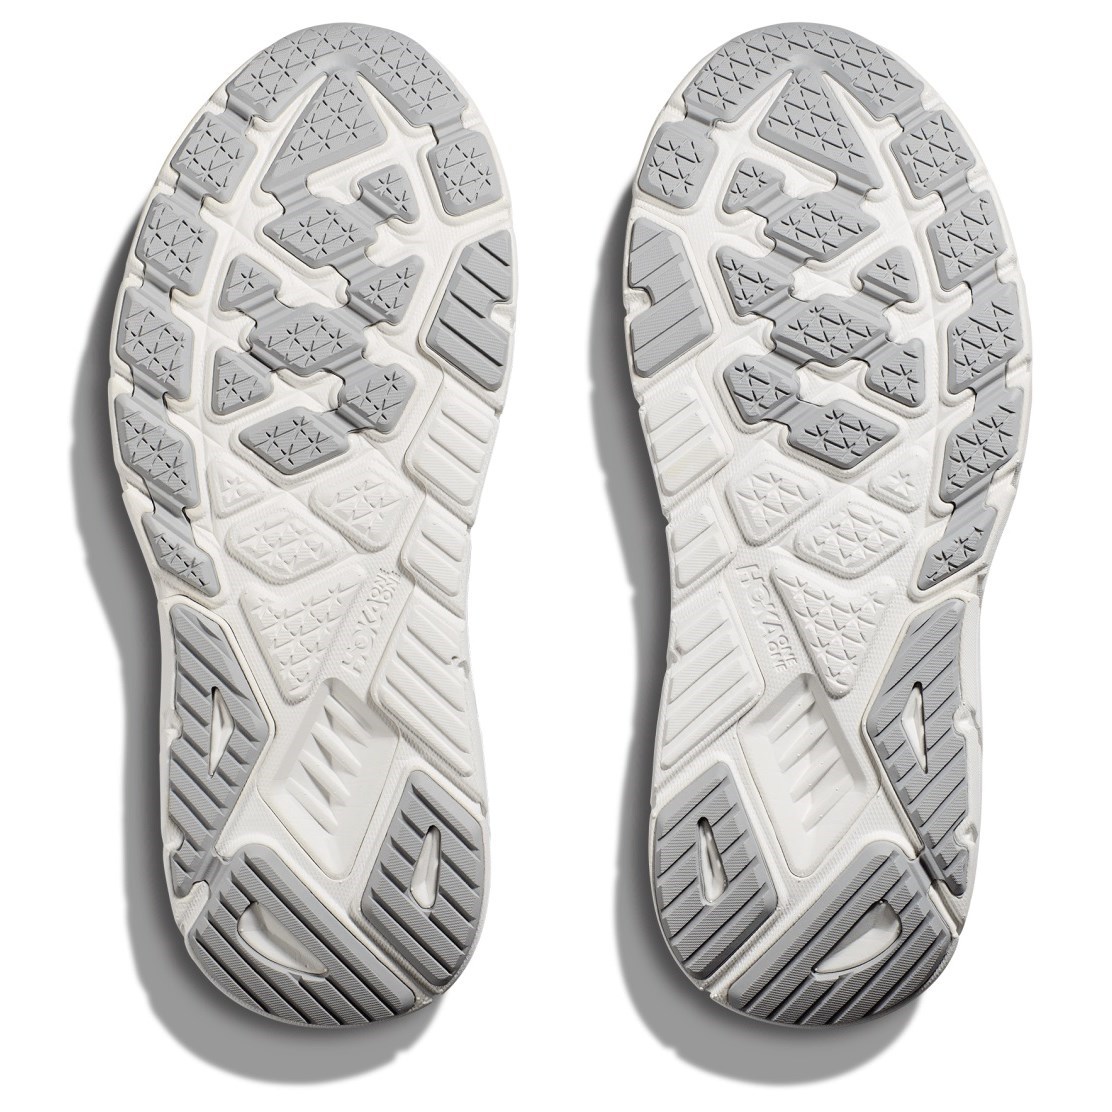 Hoka Arahi 7 - Mens Running Shoes - Outer Space/White | Sportitude